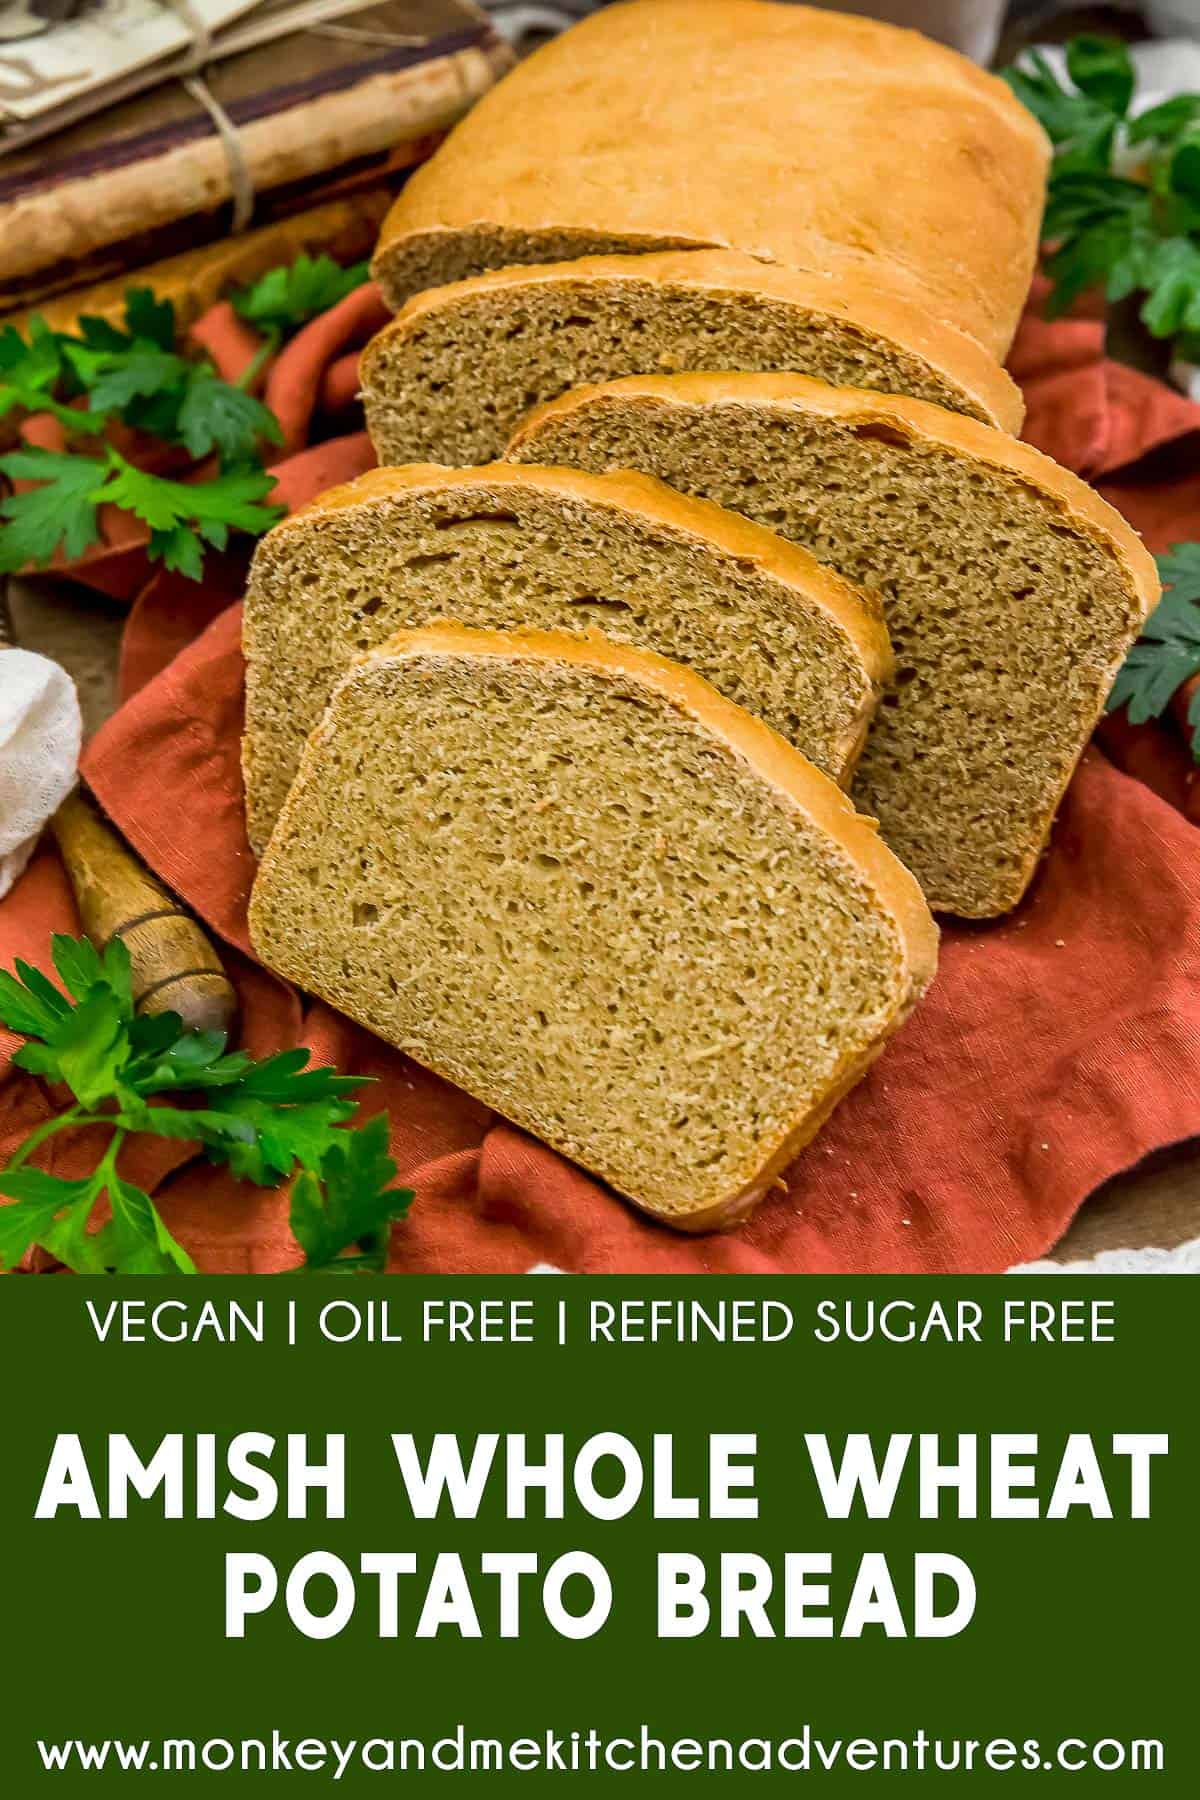 Amish Whole Wheat Potato Bread with text description